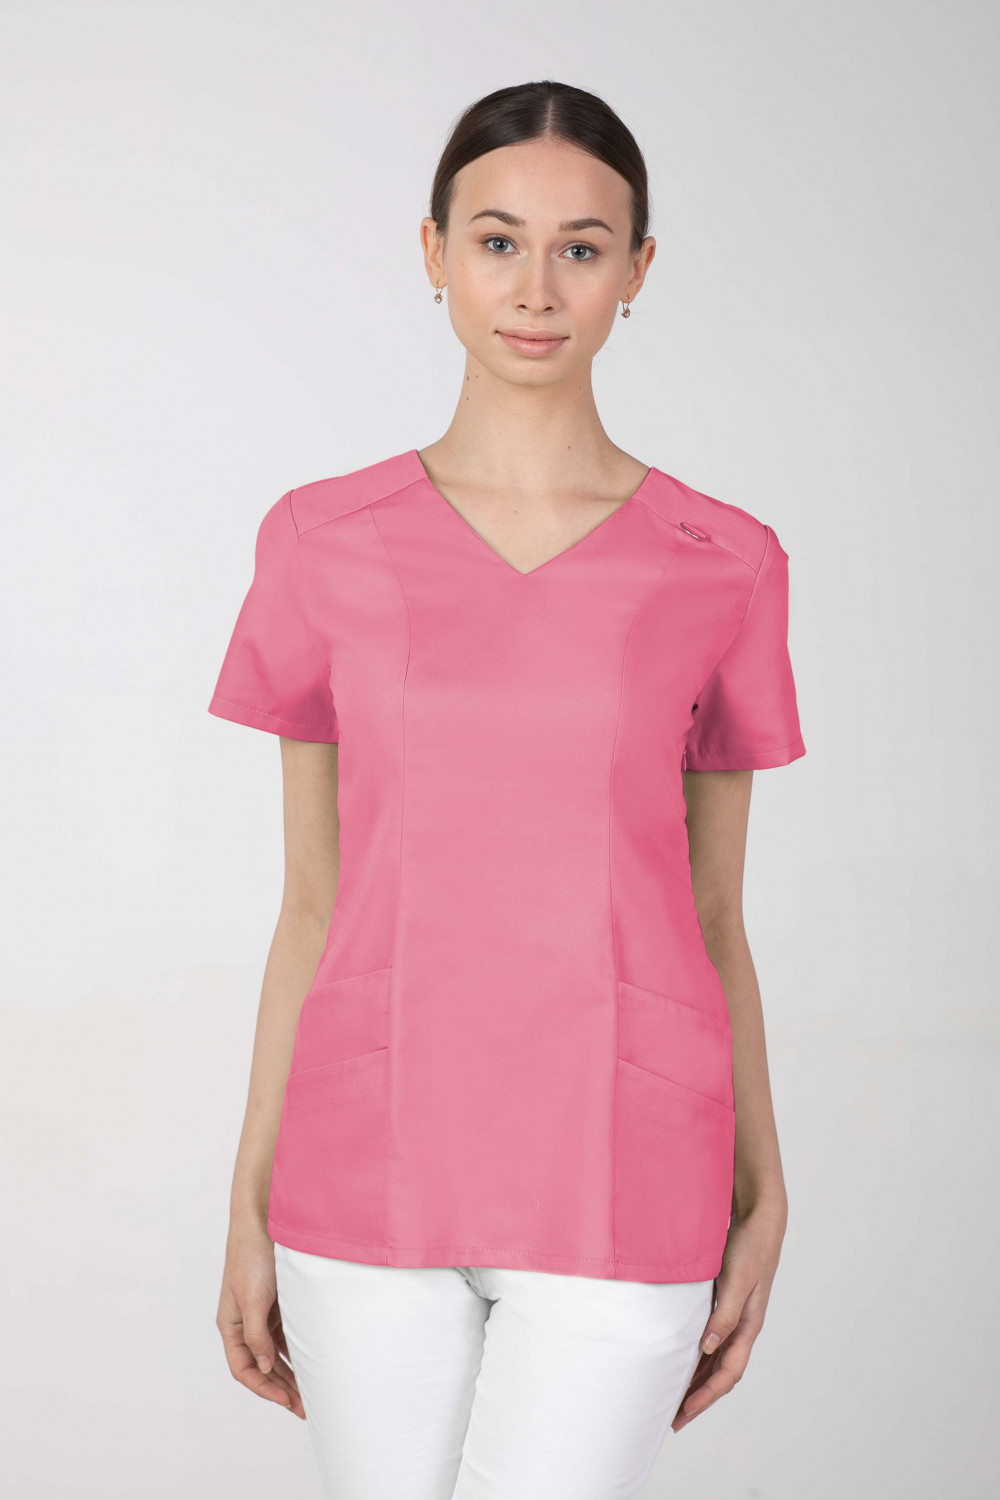 Bluza medyczna damska M-376A 26 kolorów. Malina